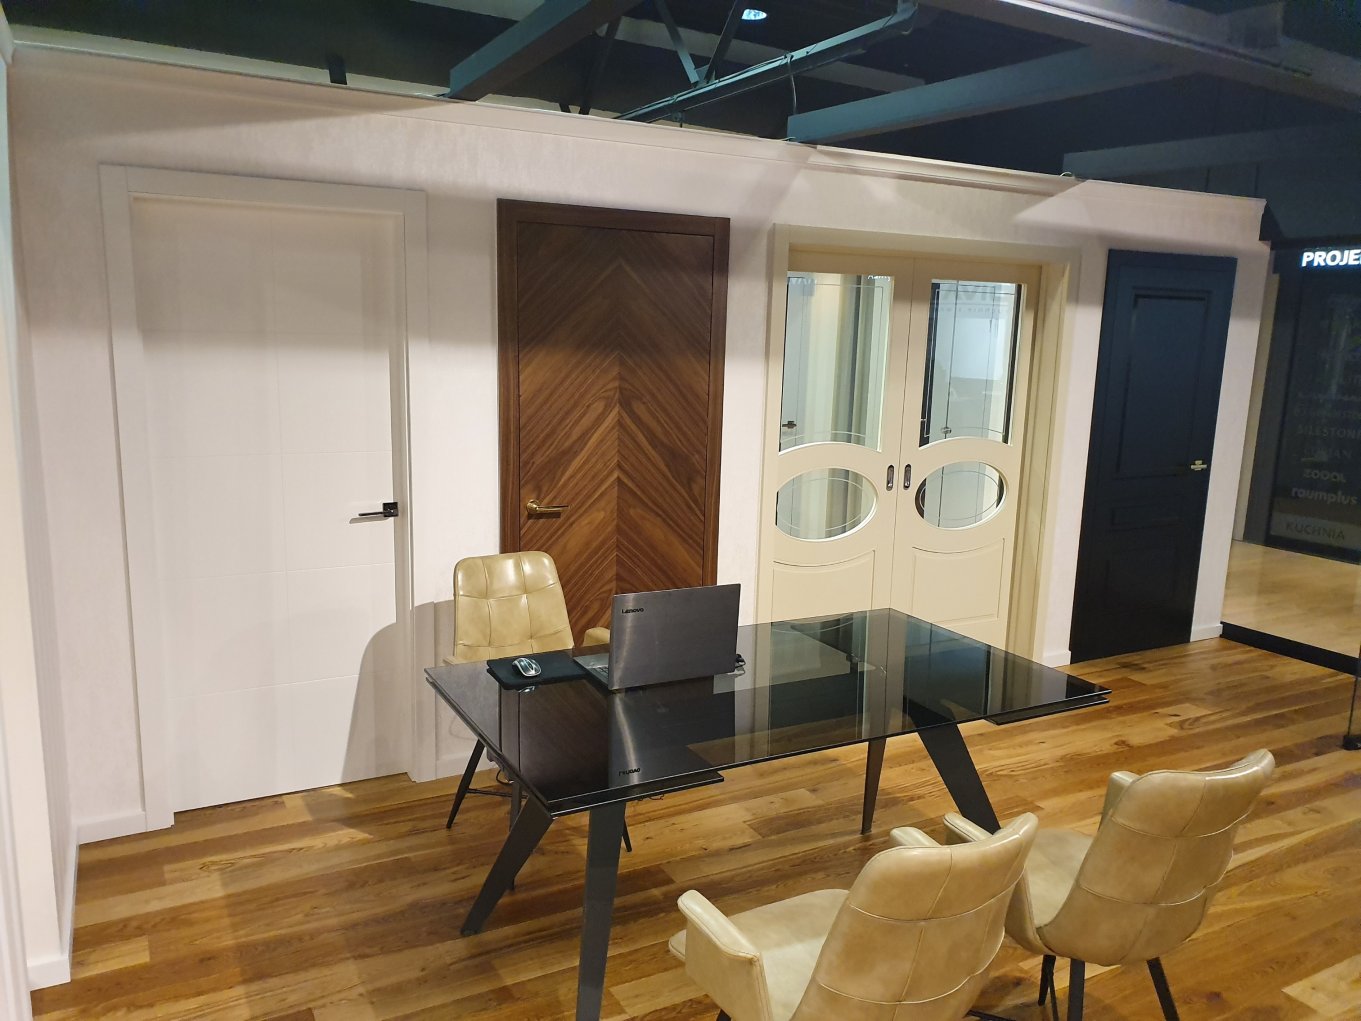 Salon drzwi drims home concept